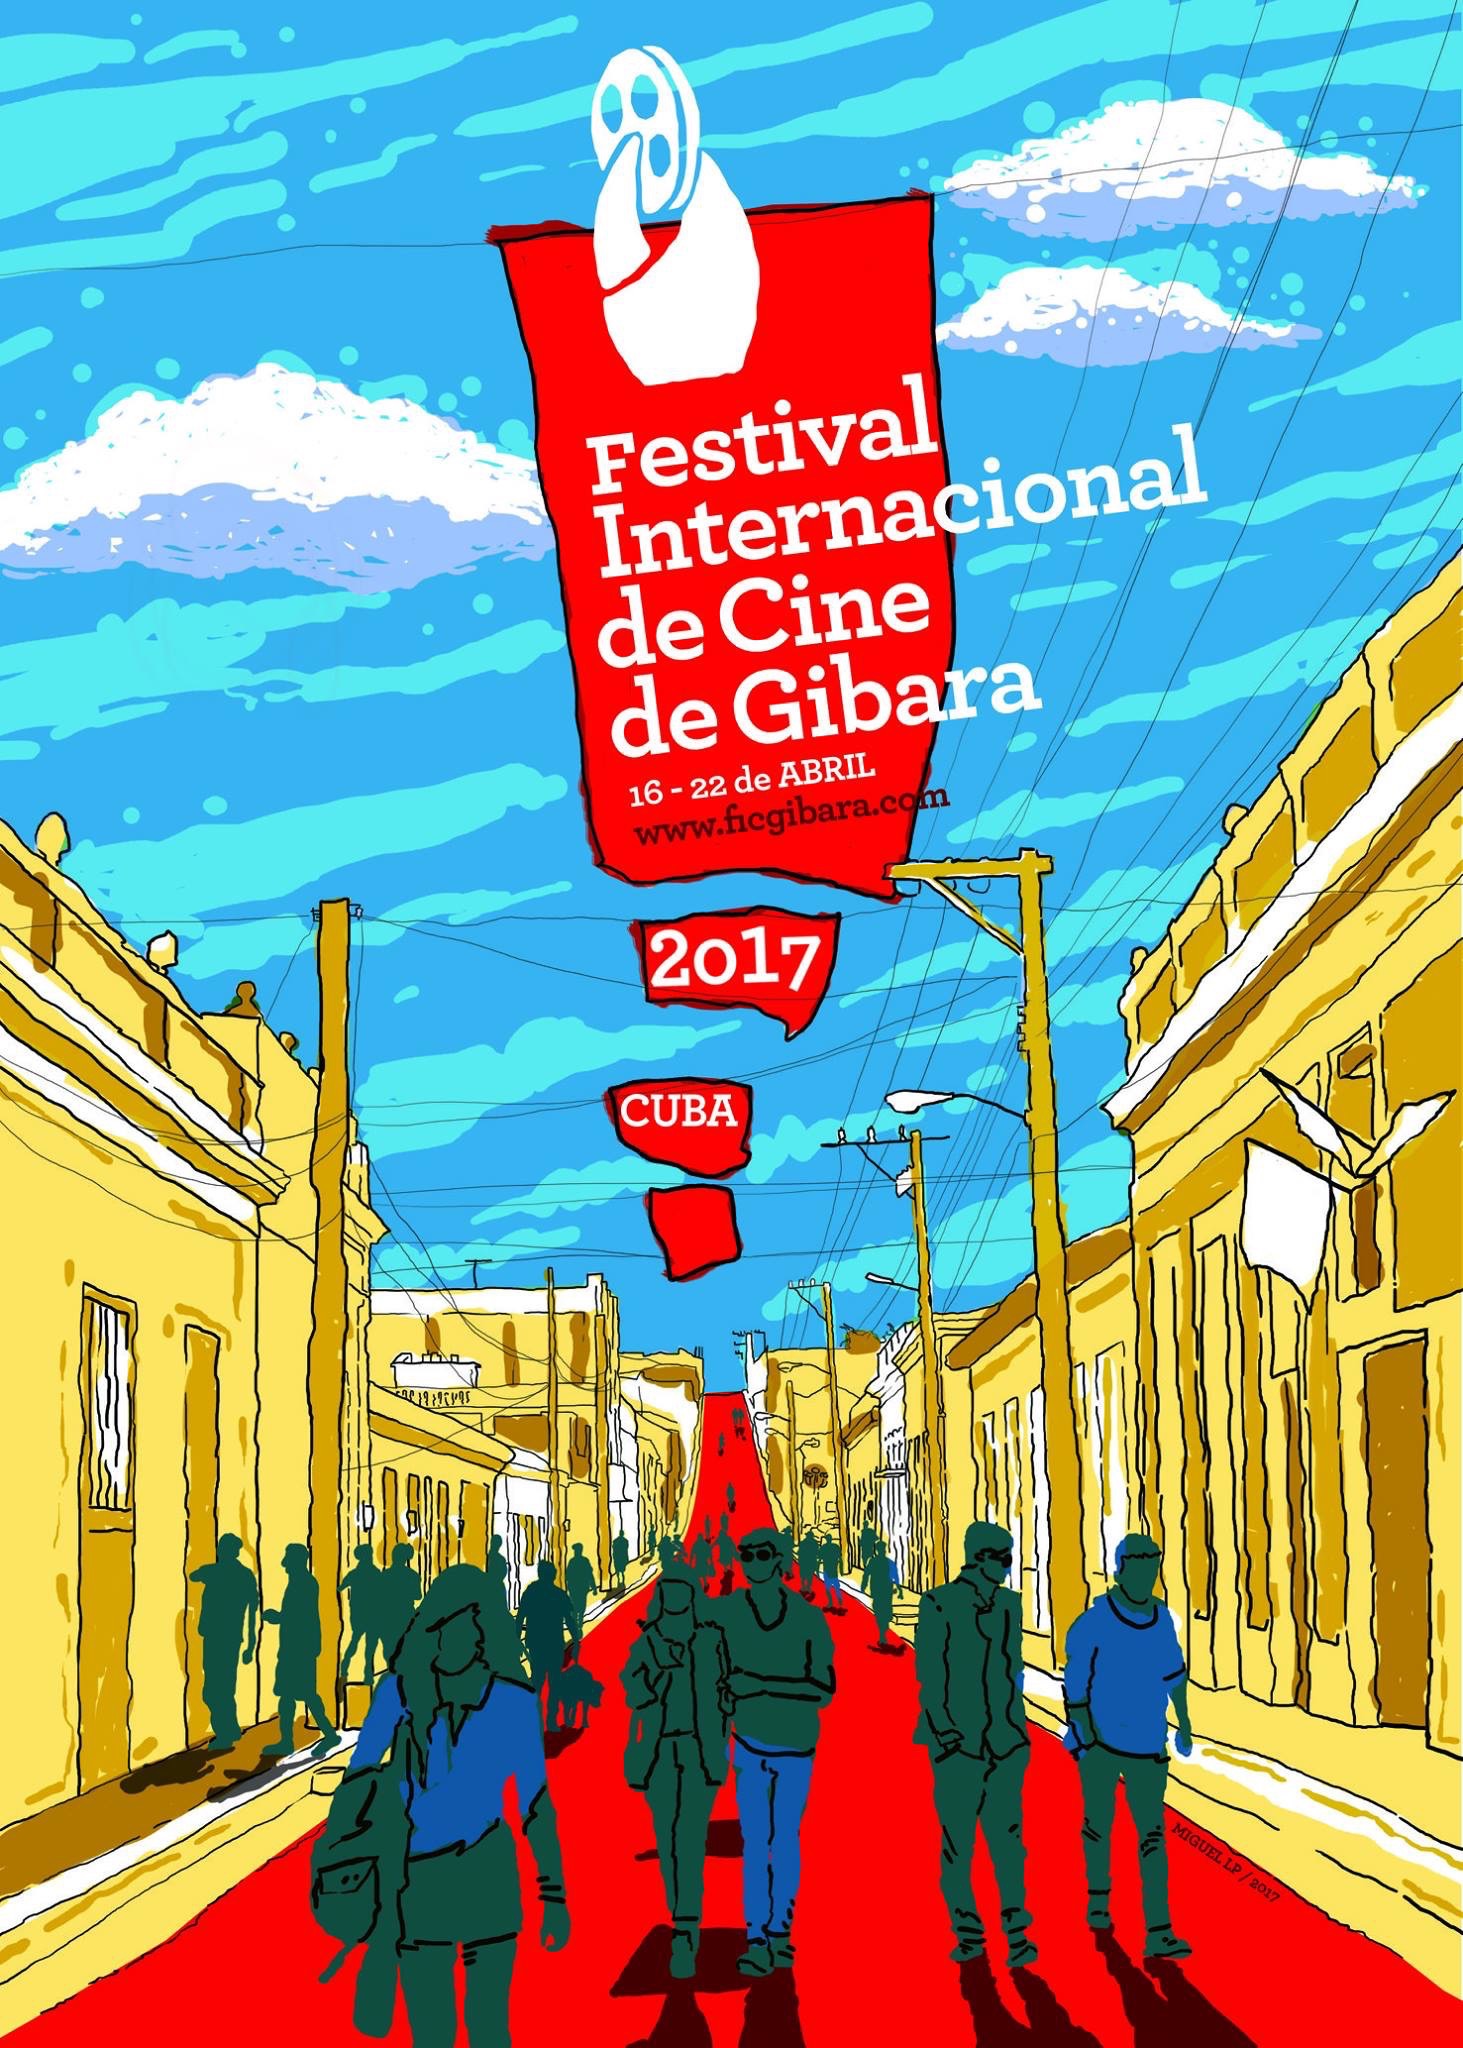 Benicio del Toro y Pablo Milanés serán invitados especiales al Festival Internacional de Cine de Gibara